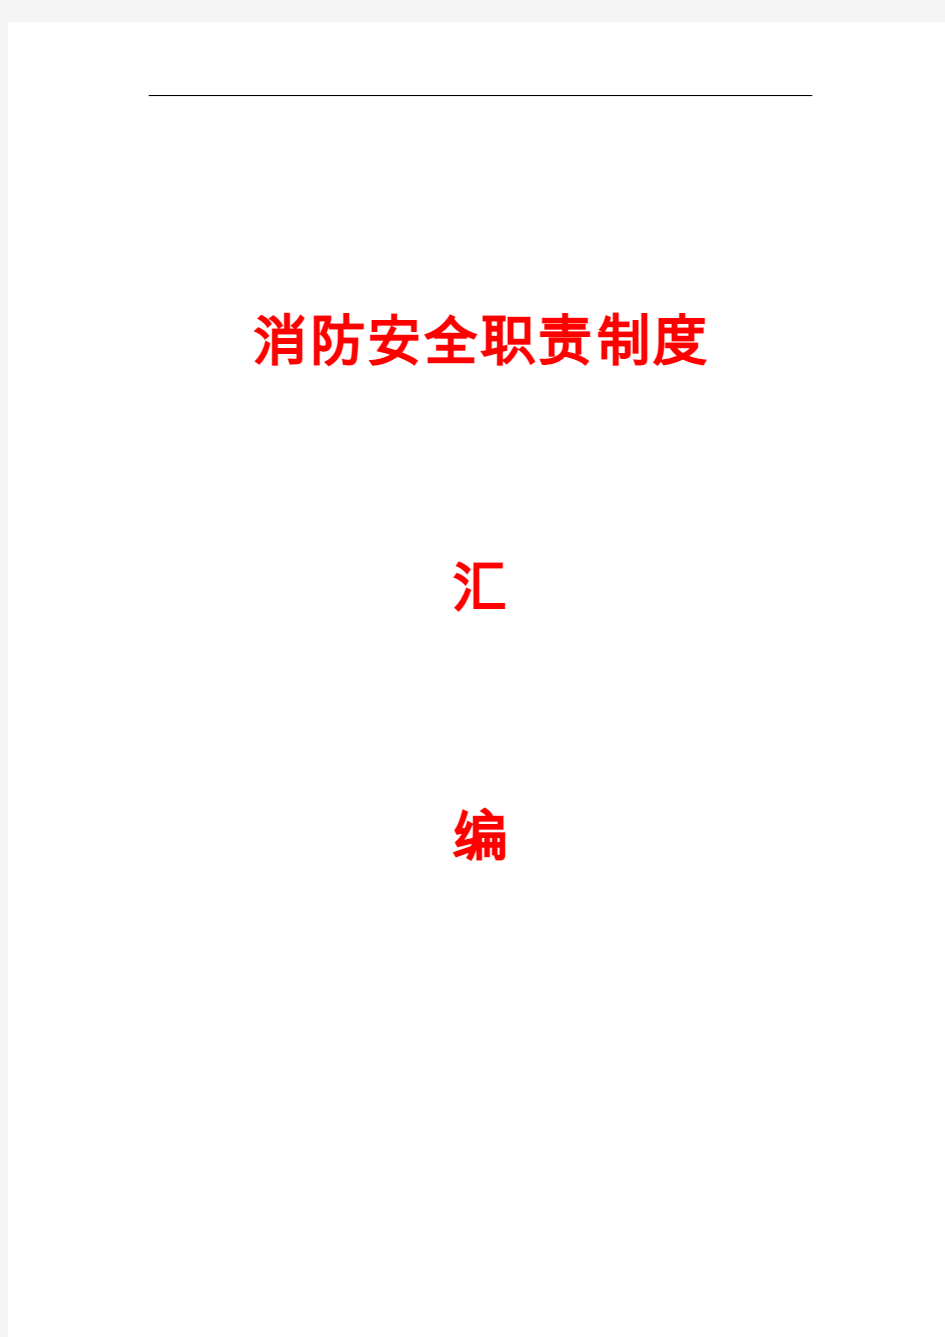 最新消防安全职责制度汇编(30页)(word版)